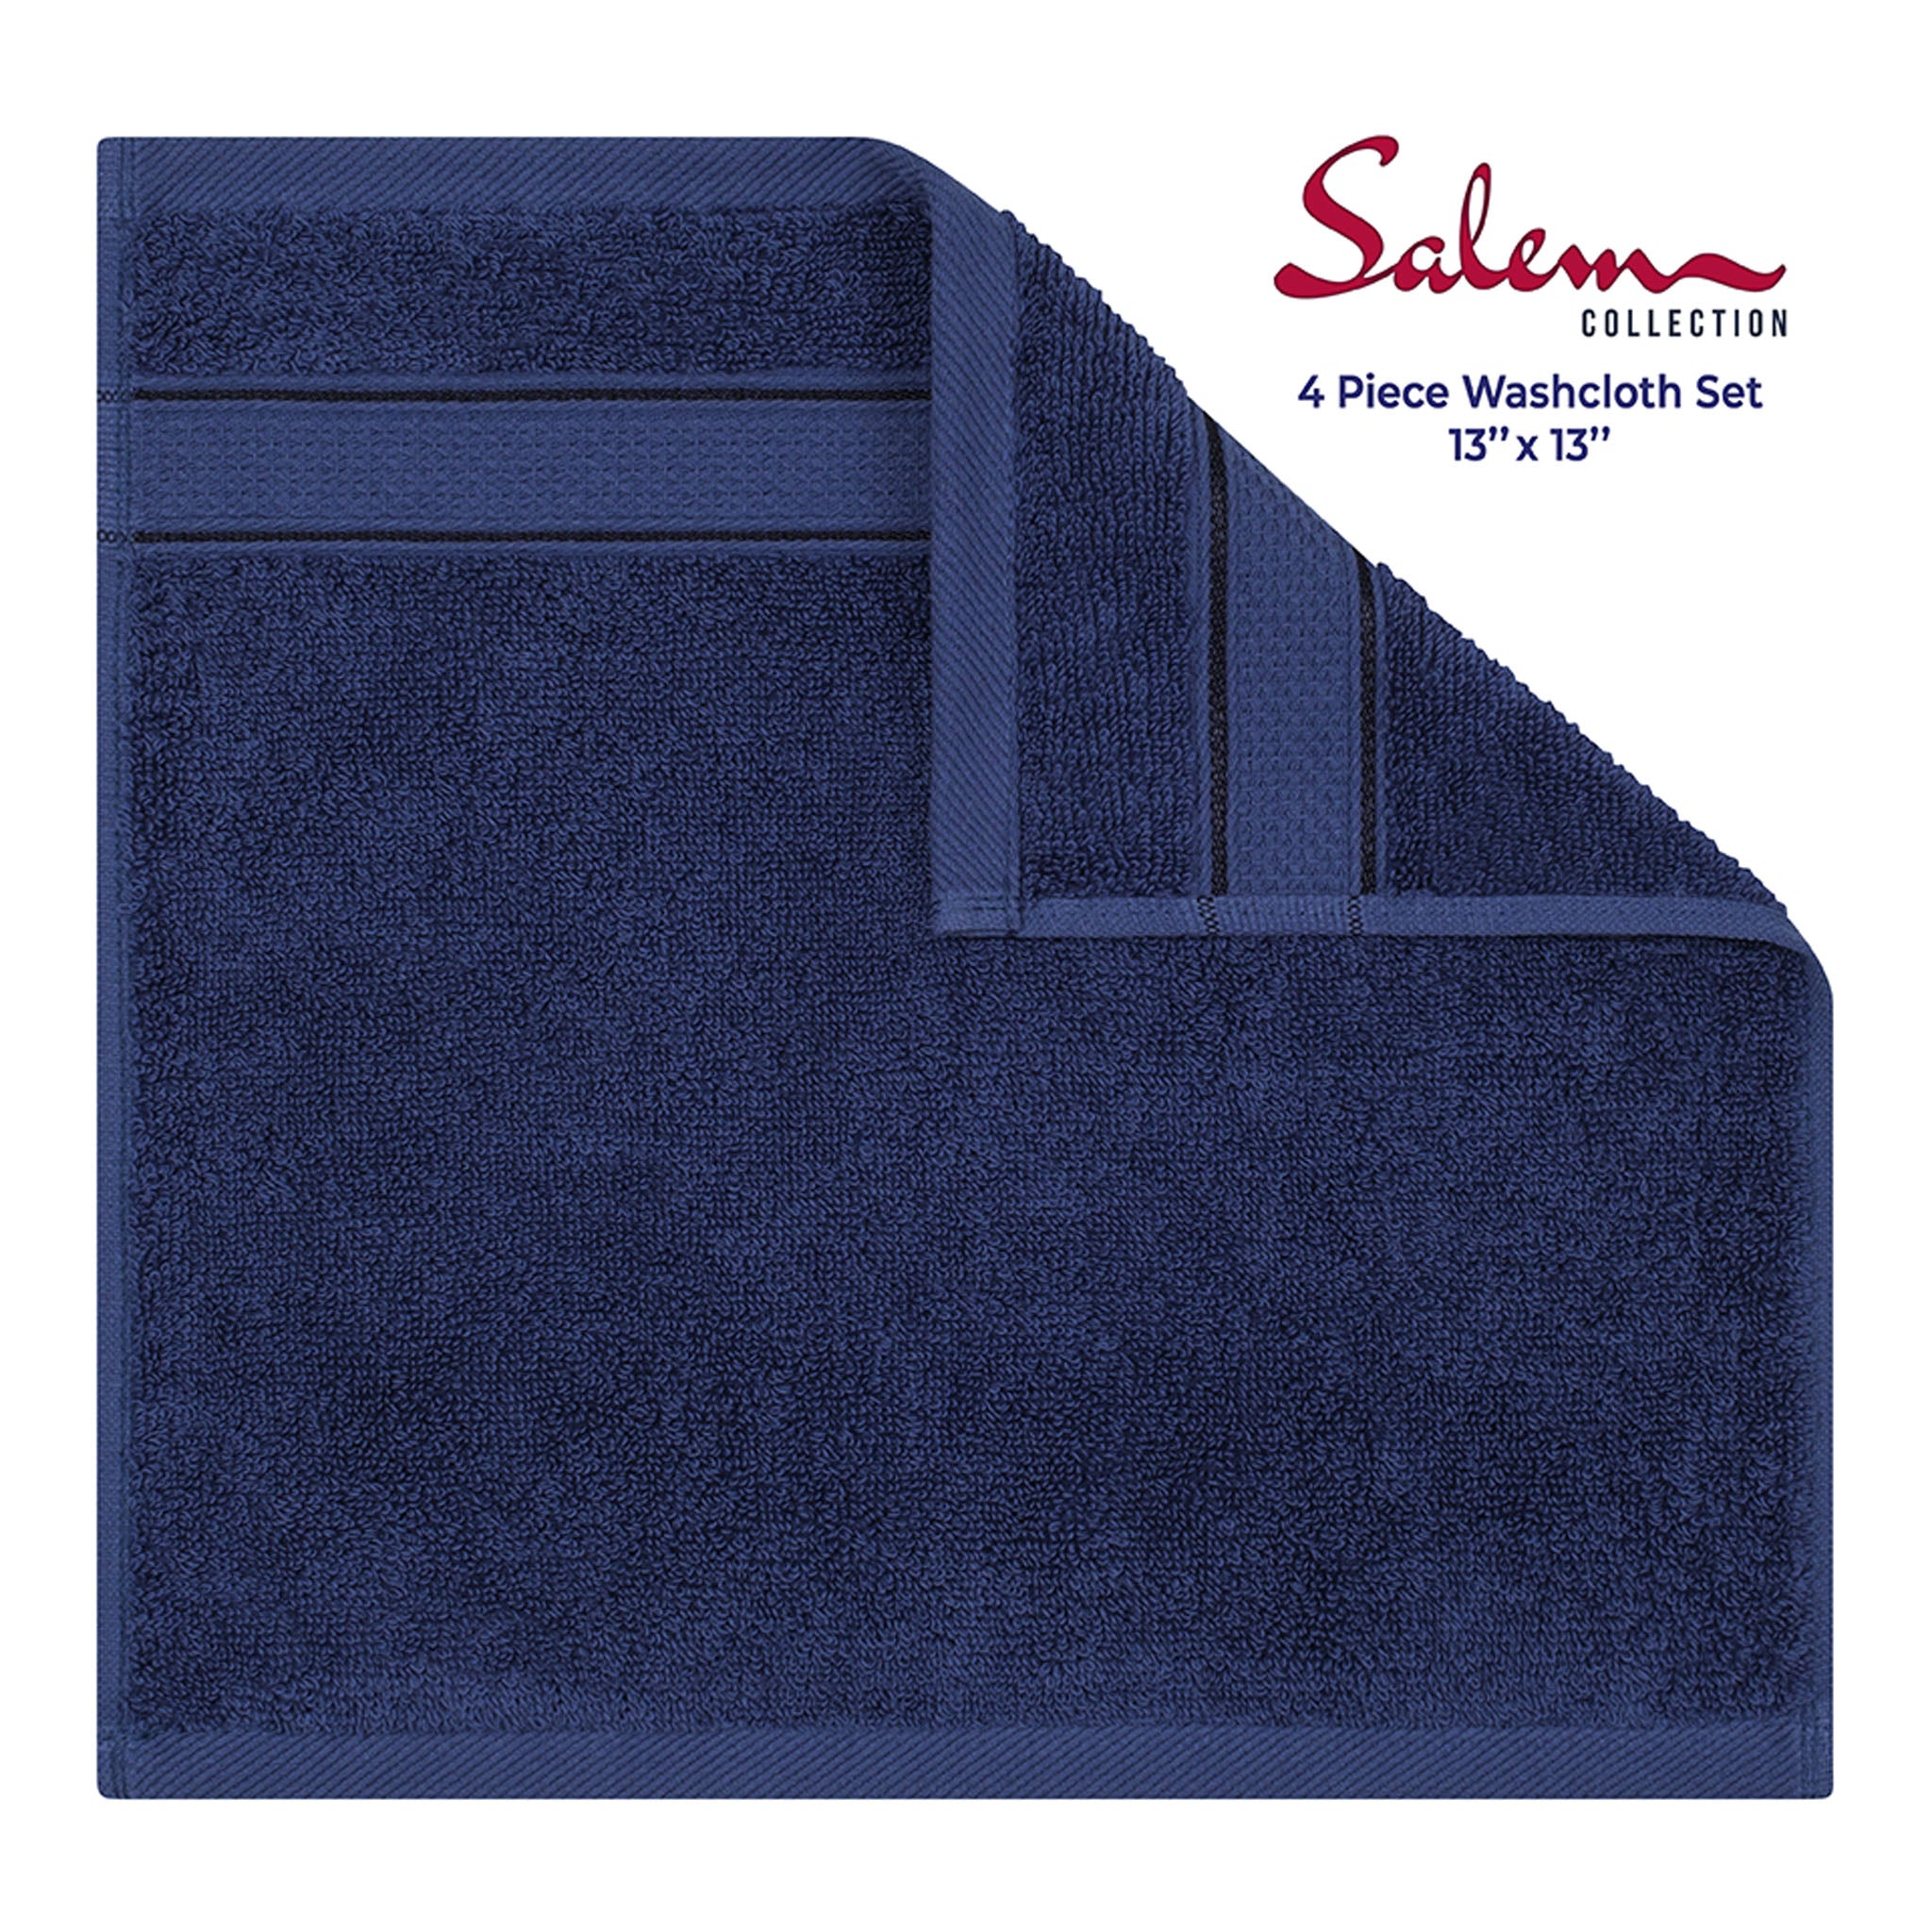 American Soft Linen Salem 100% Turkish Combed Cotton Luxury 4 Piece Washcloth Set -navy-blue-3